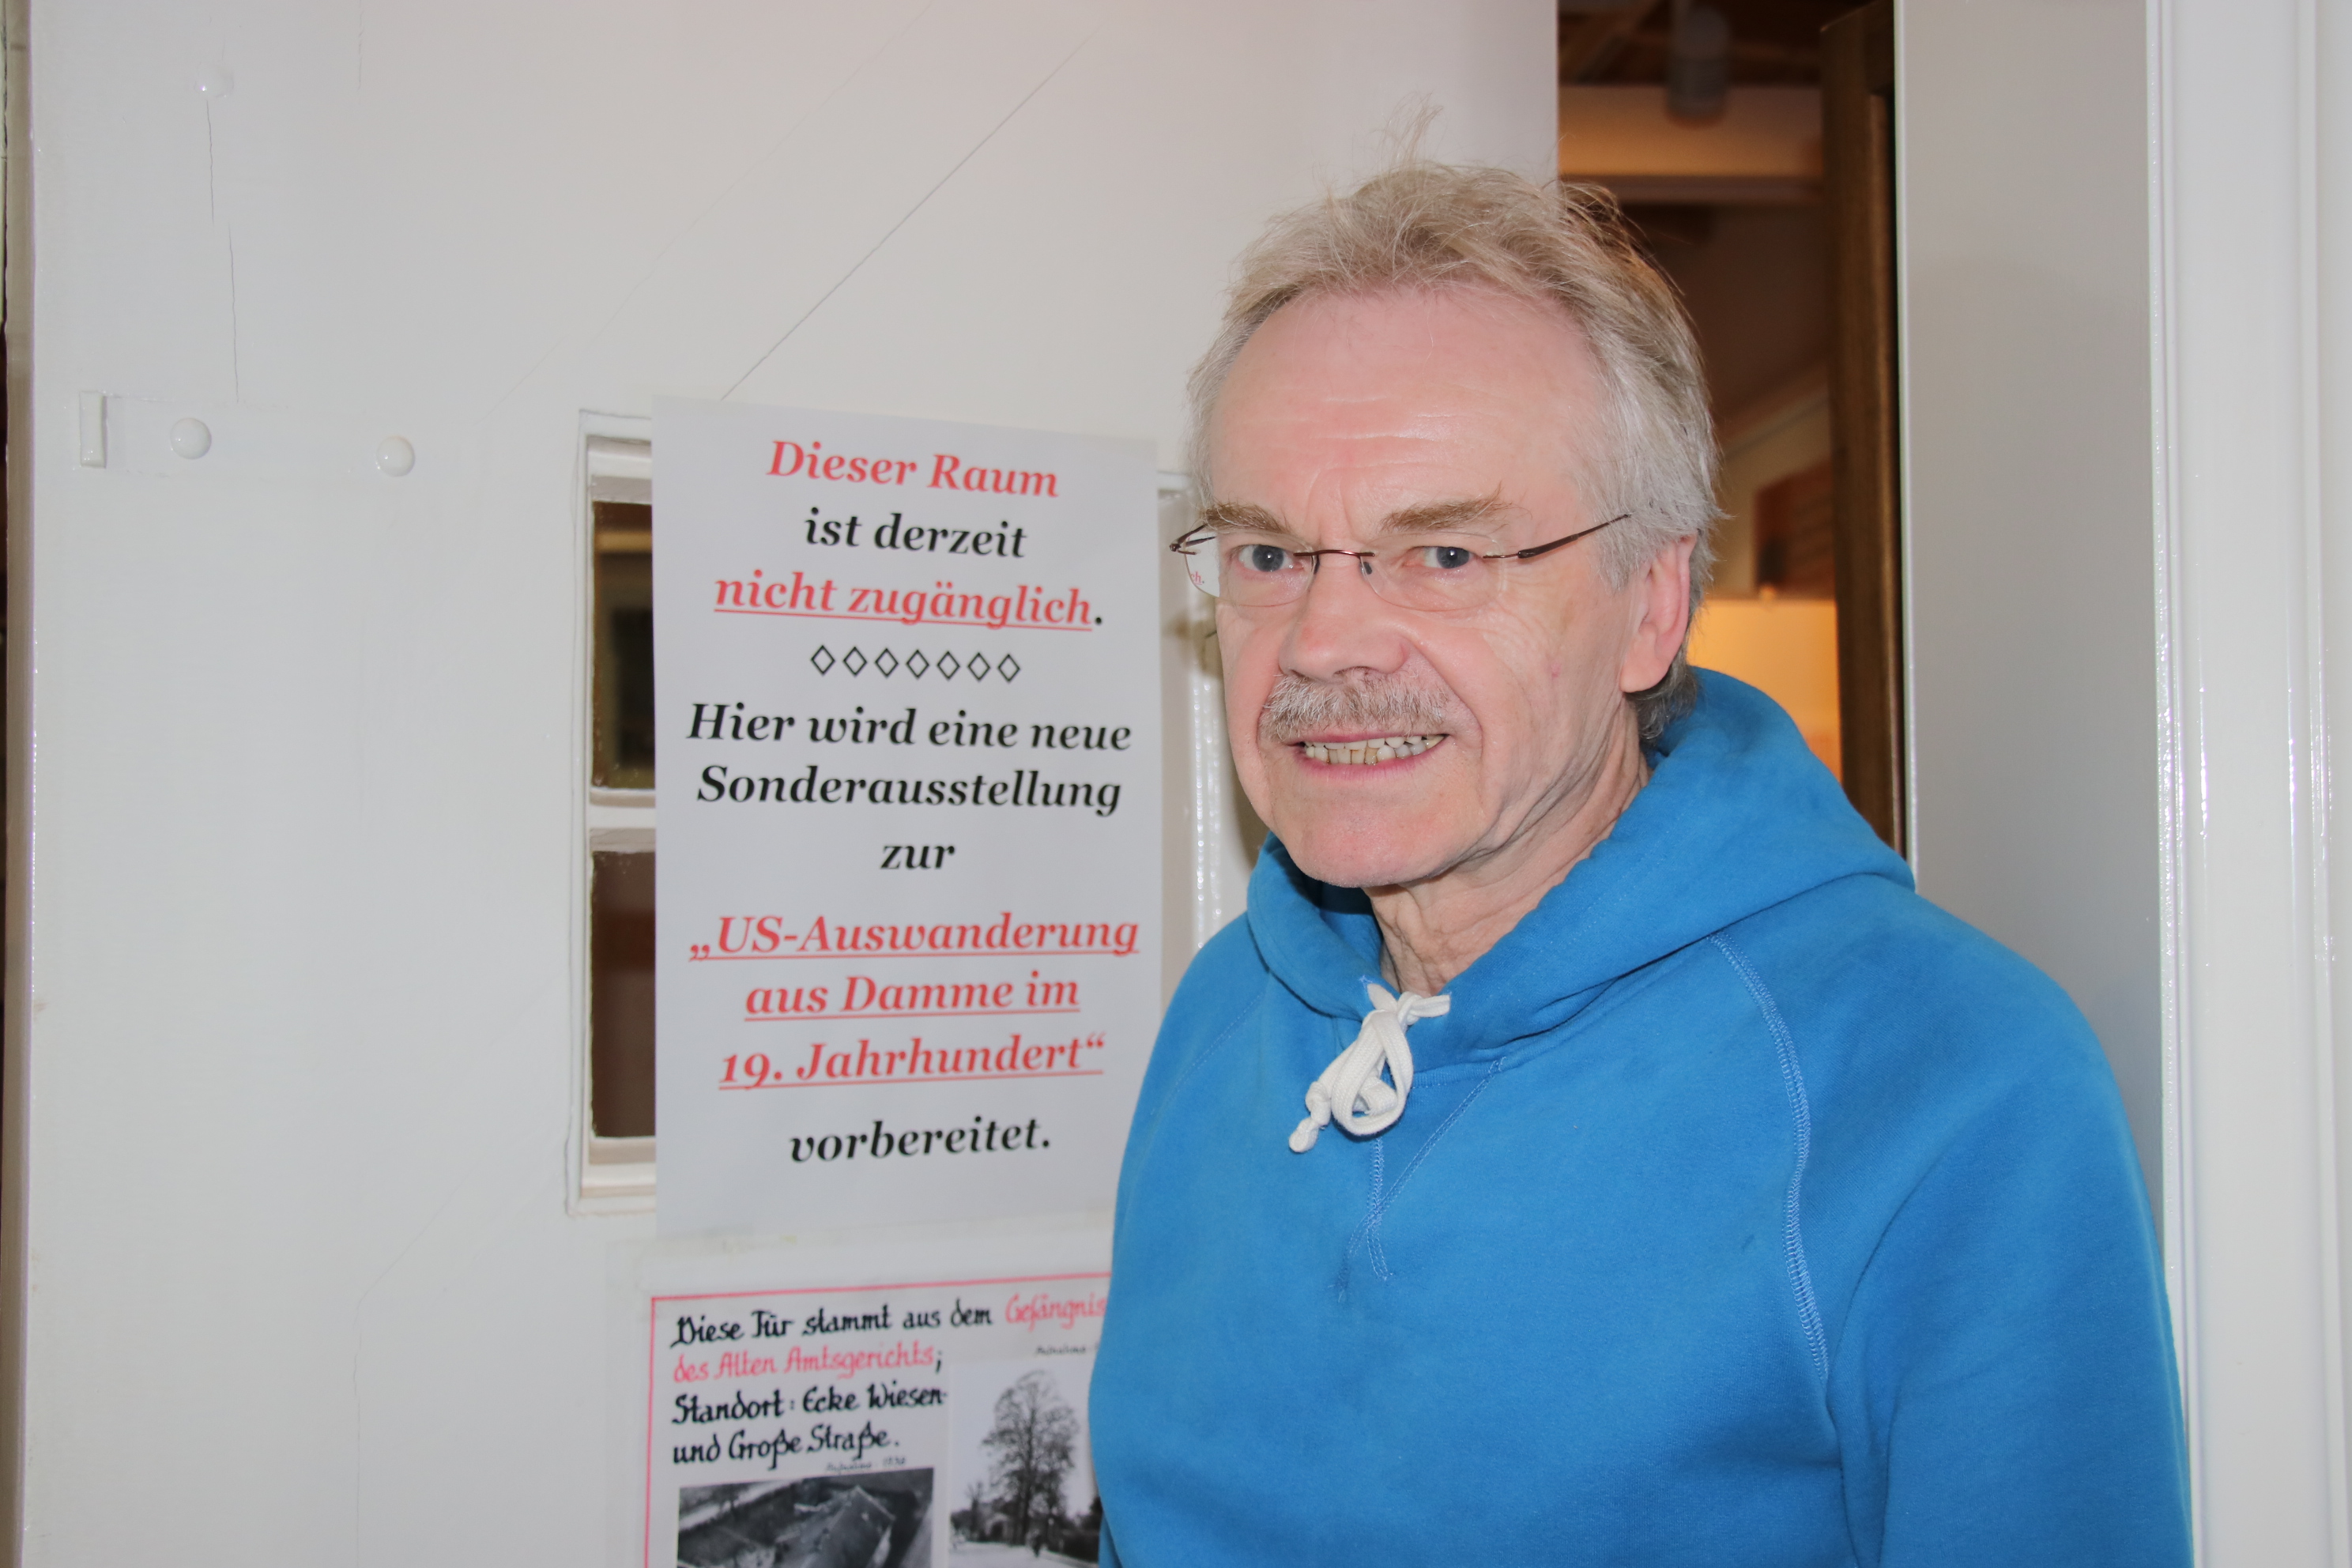 Noch verschlossen: Auf der Tür zur Sonderausstellungshalle im Dammer Stadtmuseum ist der Titel der Sonderausstellung zu lesen, die Wolfgang Friemerding derzeit vorbereitet. Foto: Lammert